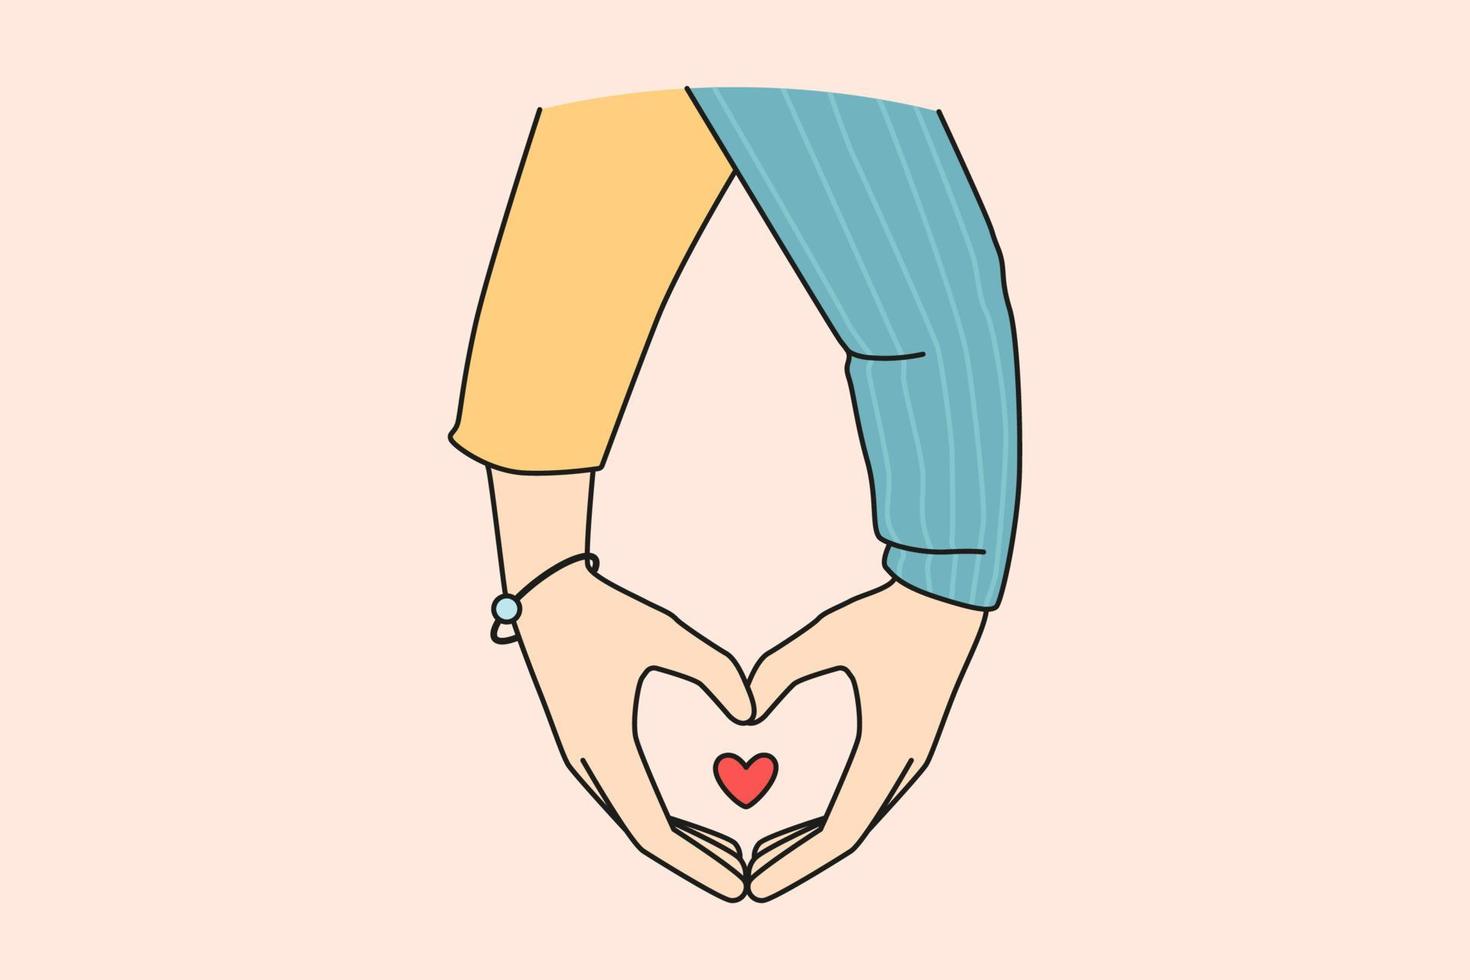 Händchen haltendes Paar zeigt Herzzeichen mit den Fingern. mann und frau demonstrieren liebessymbol fühlen liebe und zuneigung. Beziehungskonzept. Vektor-Illustration. vektor